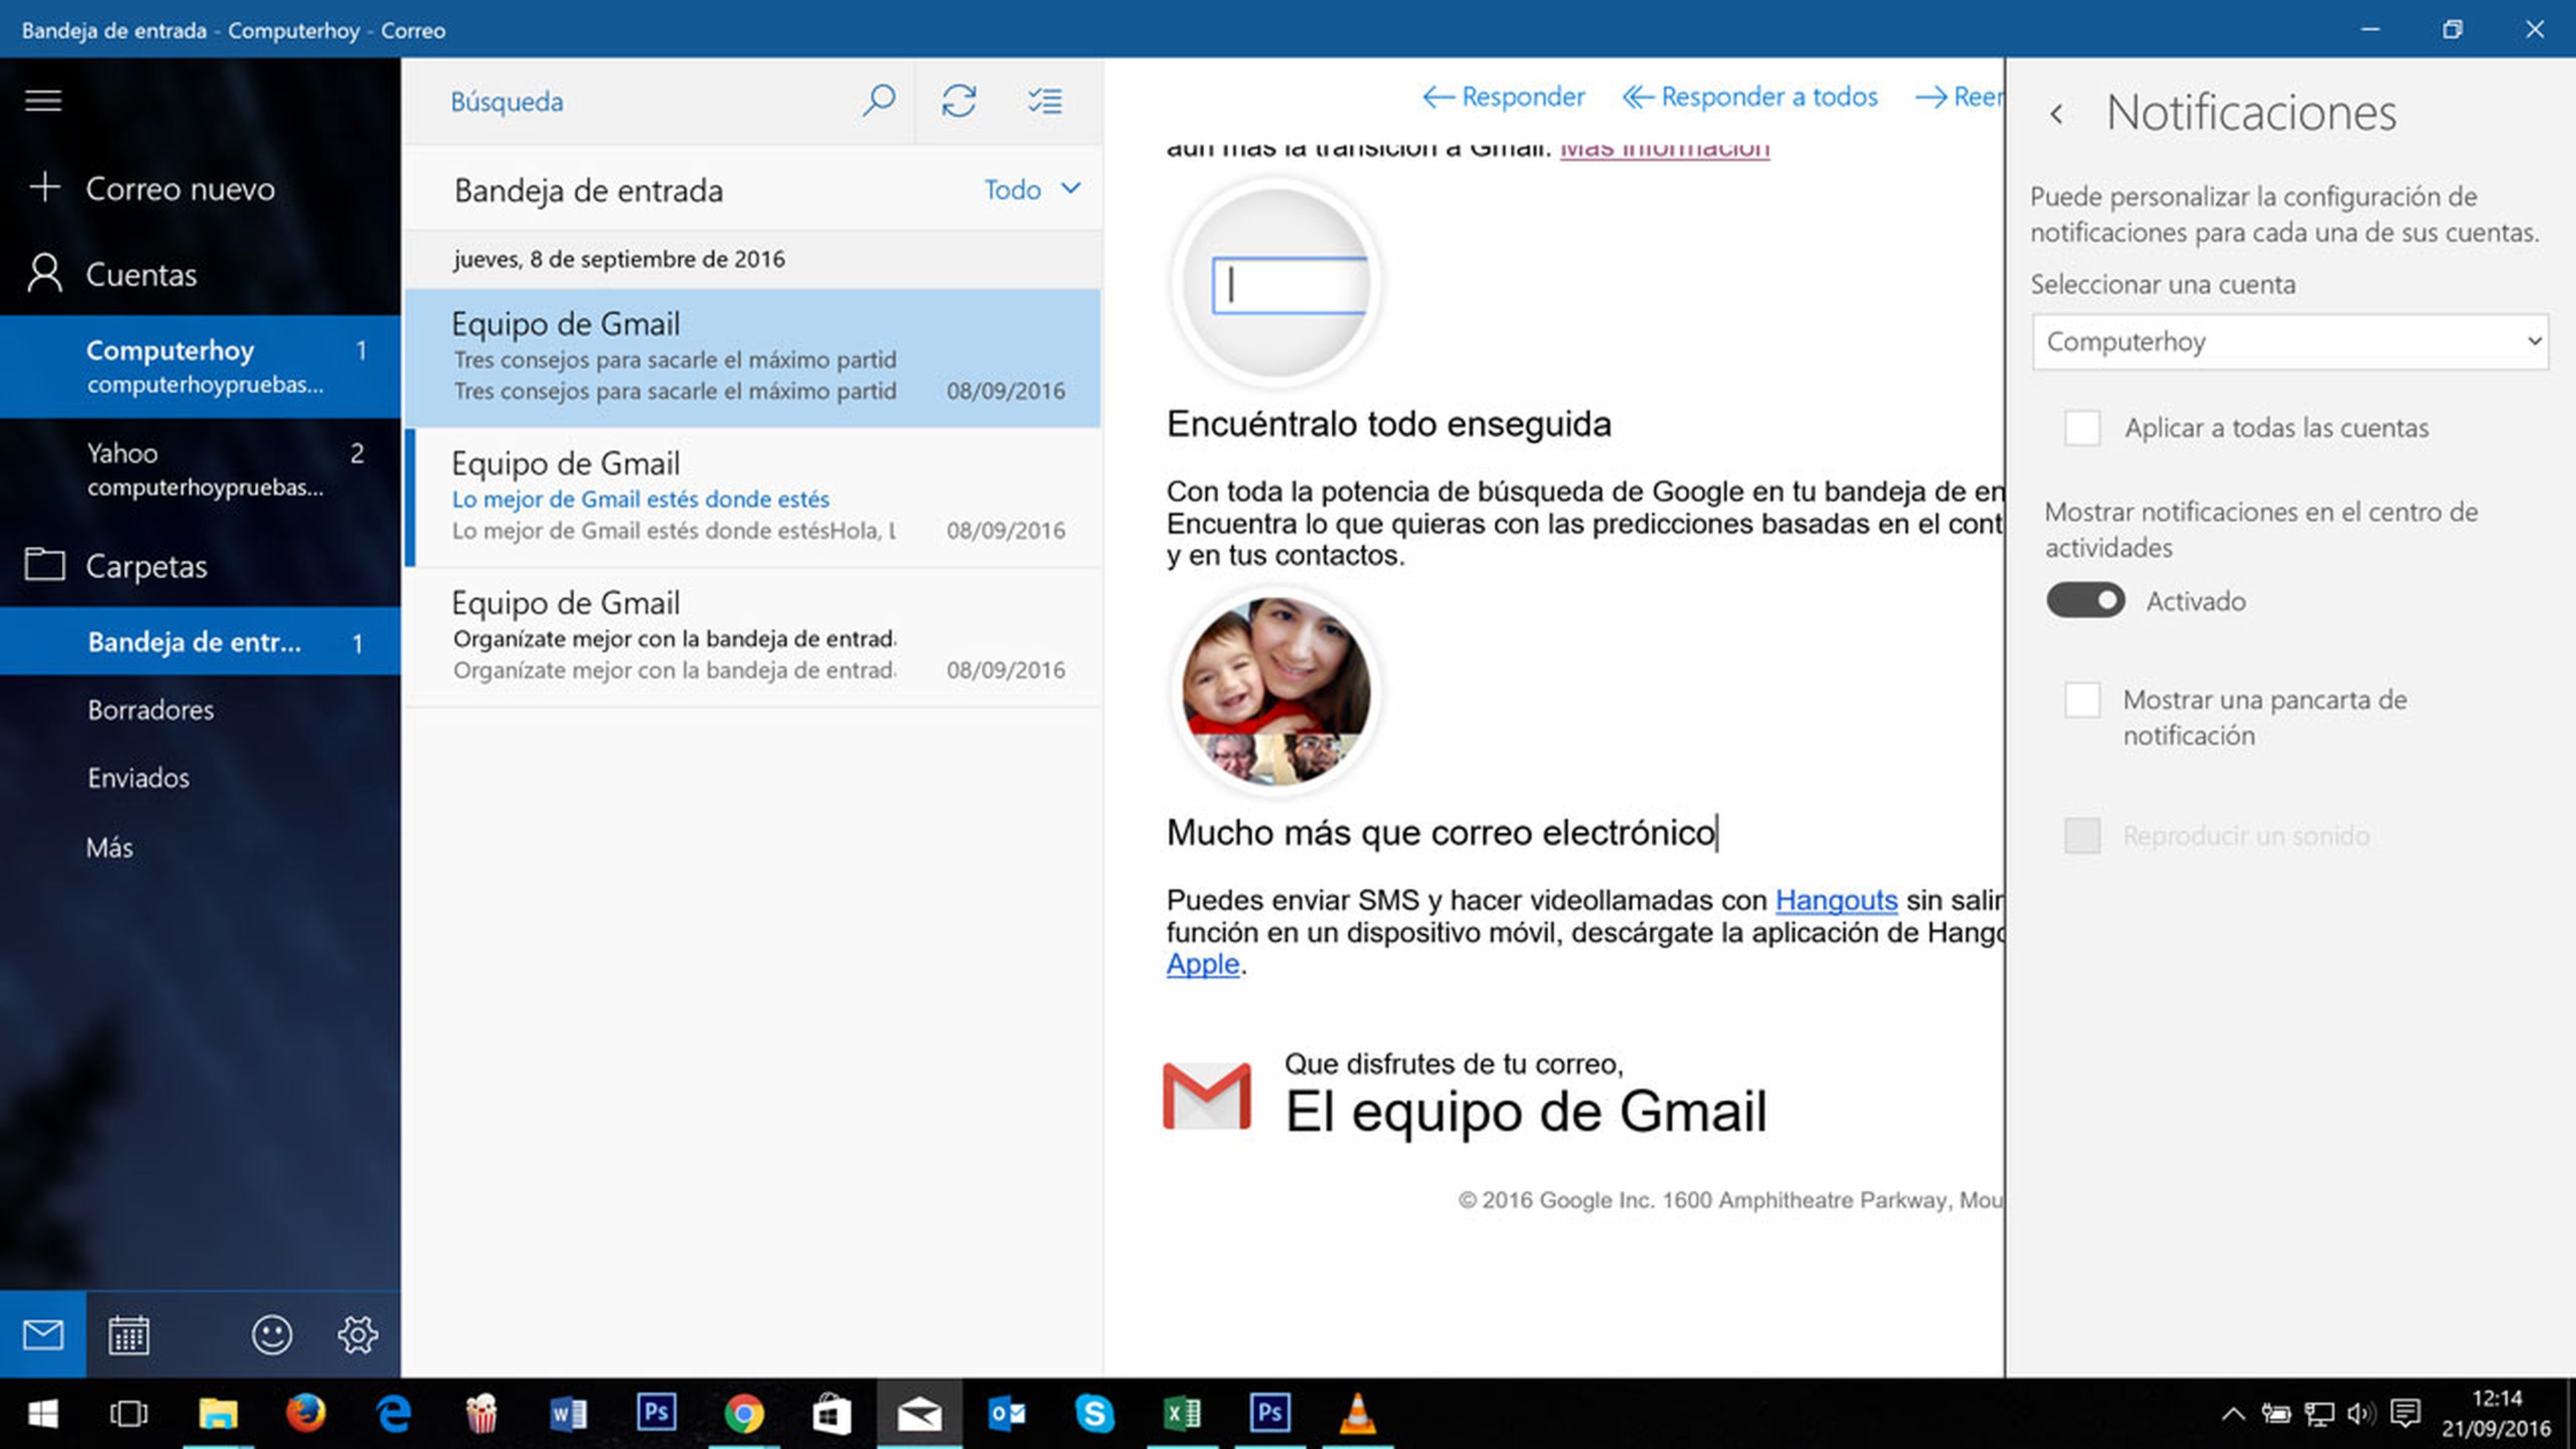 Configuración de las notificaciones en la aplicación de correo de windows 10